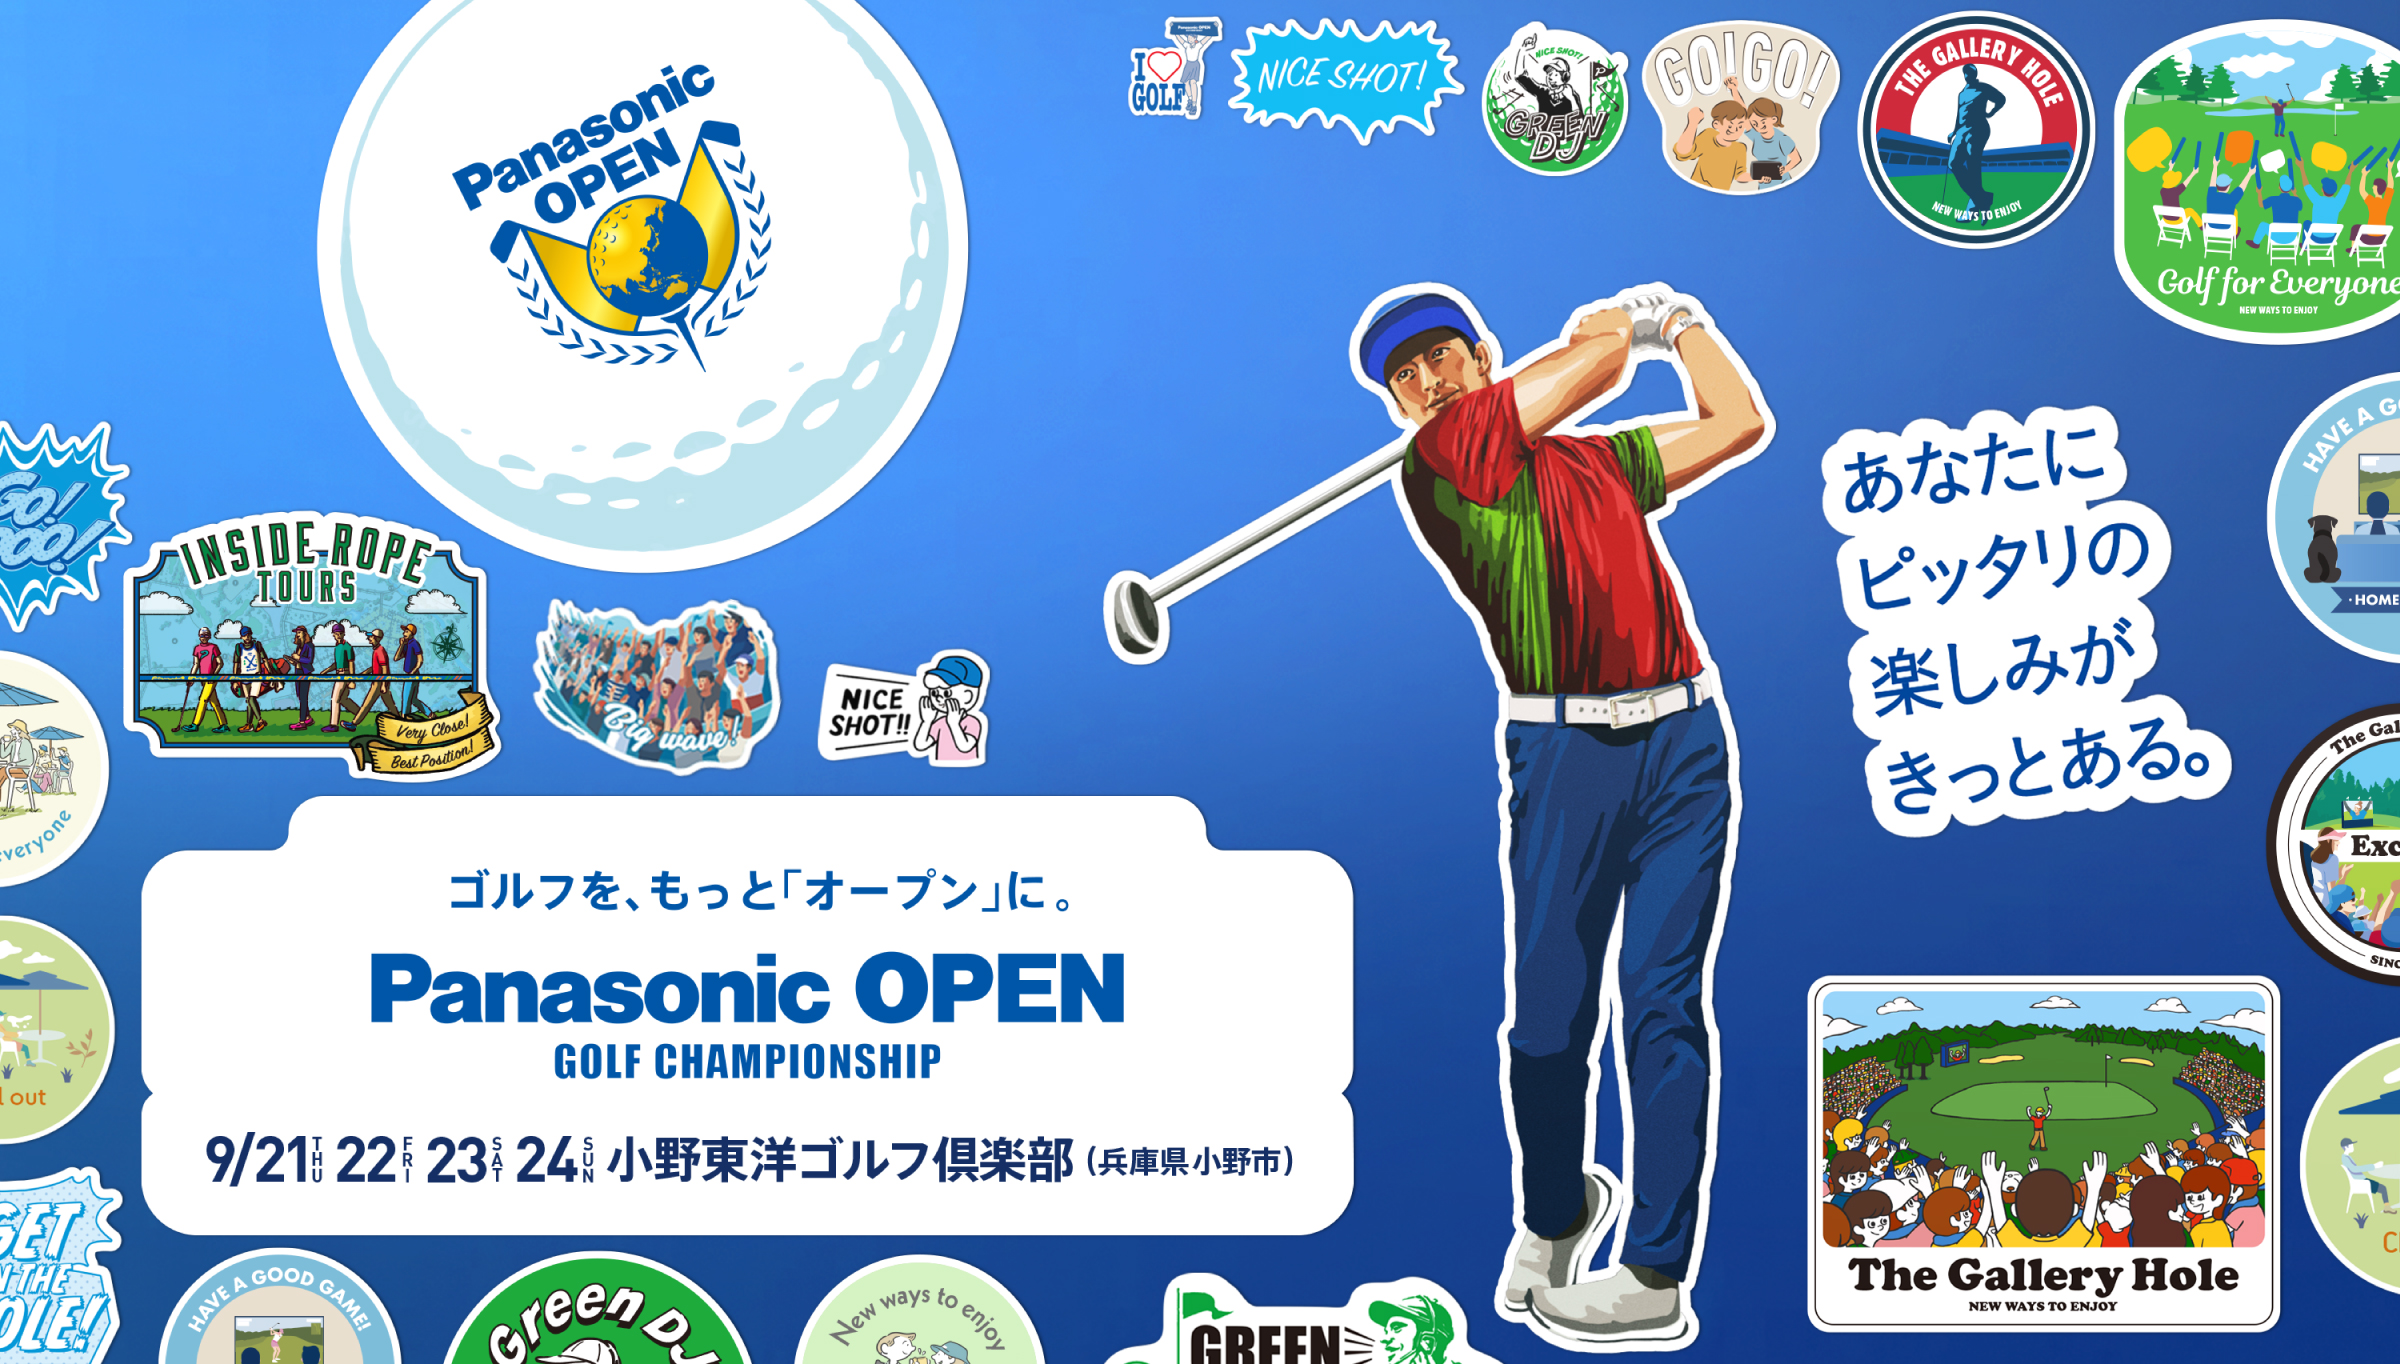 あなたにピッタリの楽しみがある。 Panasonic OPEN GOLF CHAMPIONSHIP ゴルフを、もっと「オープン」に。 2023. 9/21（THU）、22（FRI）、23（SAT）、24（SUN） 小野東洋ゴルフ倶楽部（兵庫県小野市）